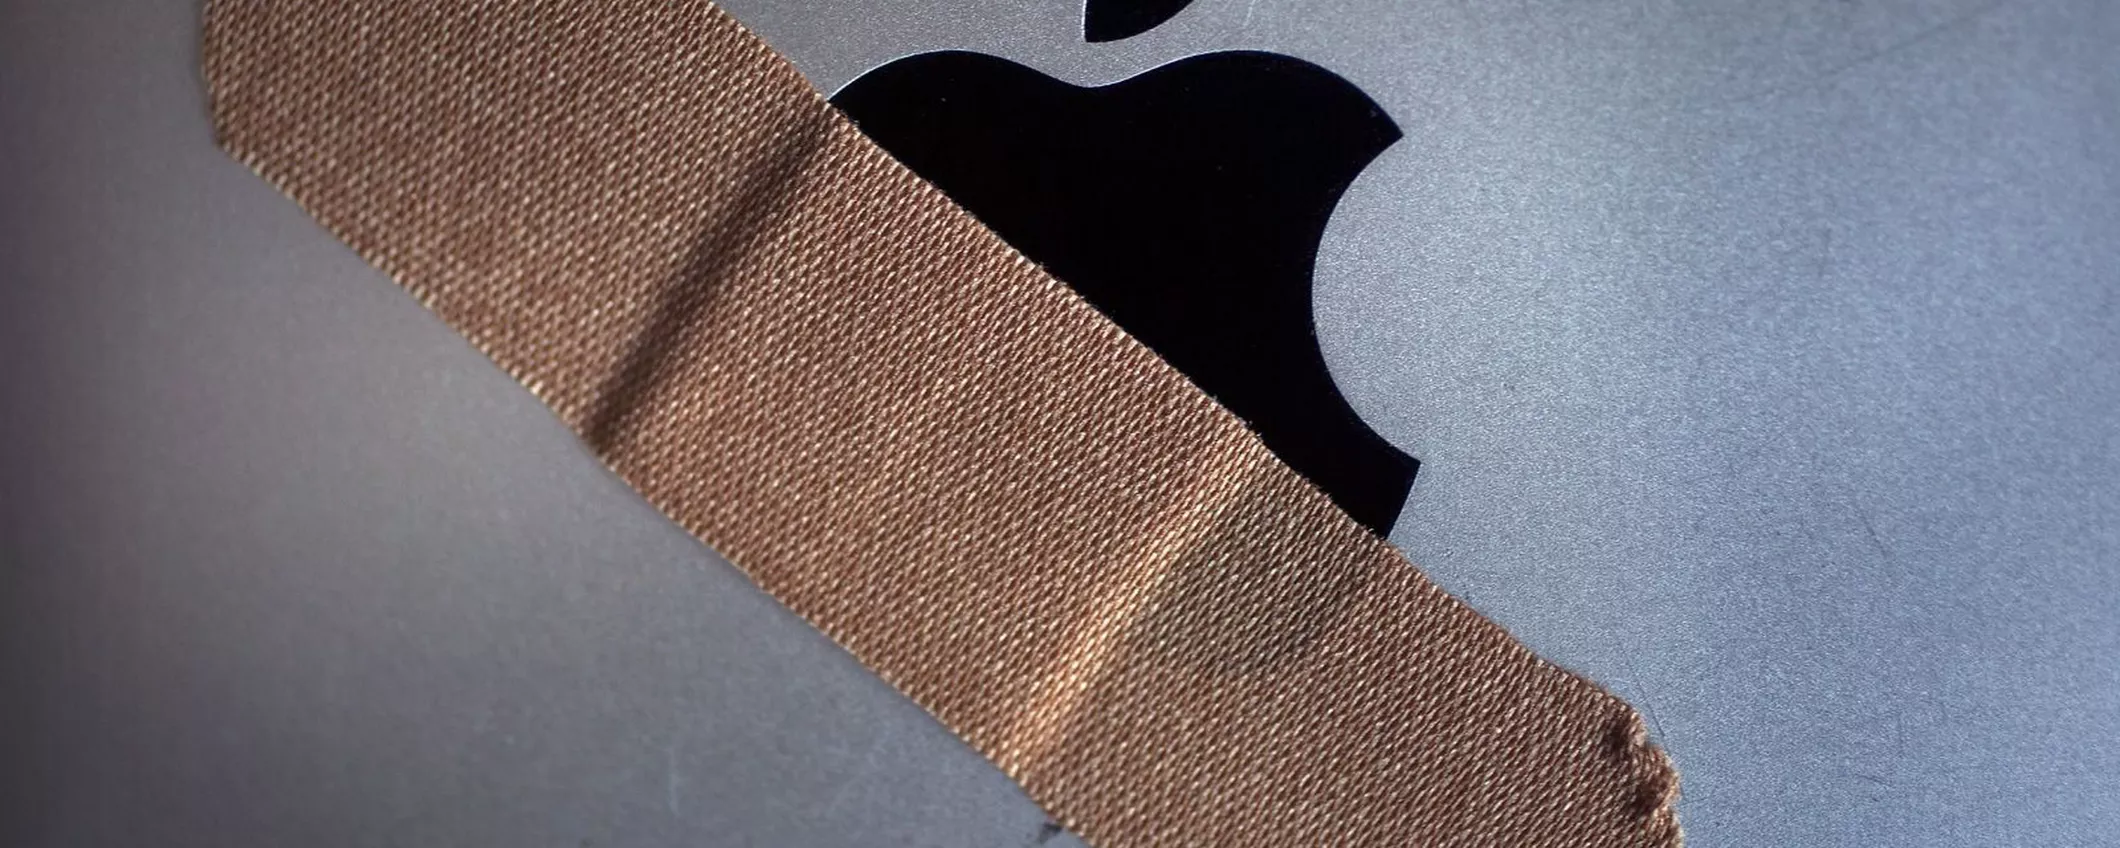 Questi iPhone e Mac sono ufficialmente obsoleti (niente riparazione)